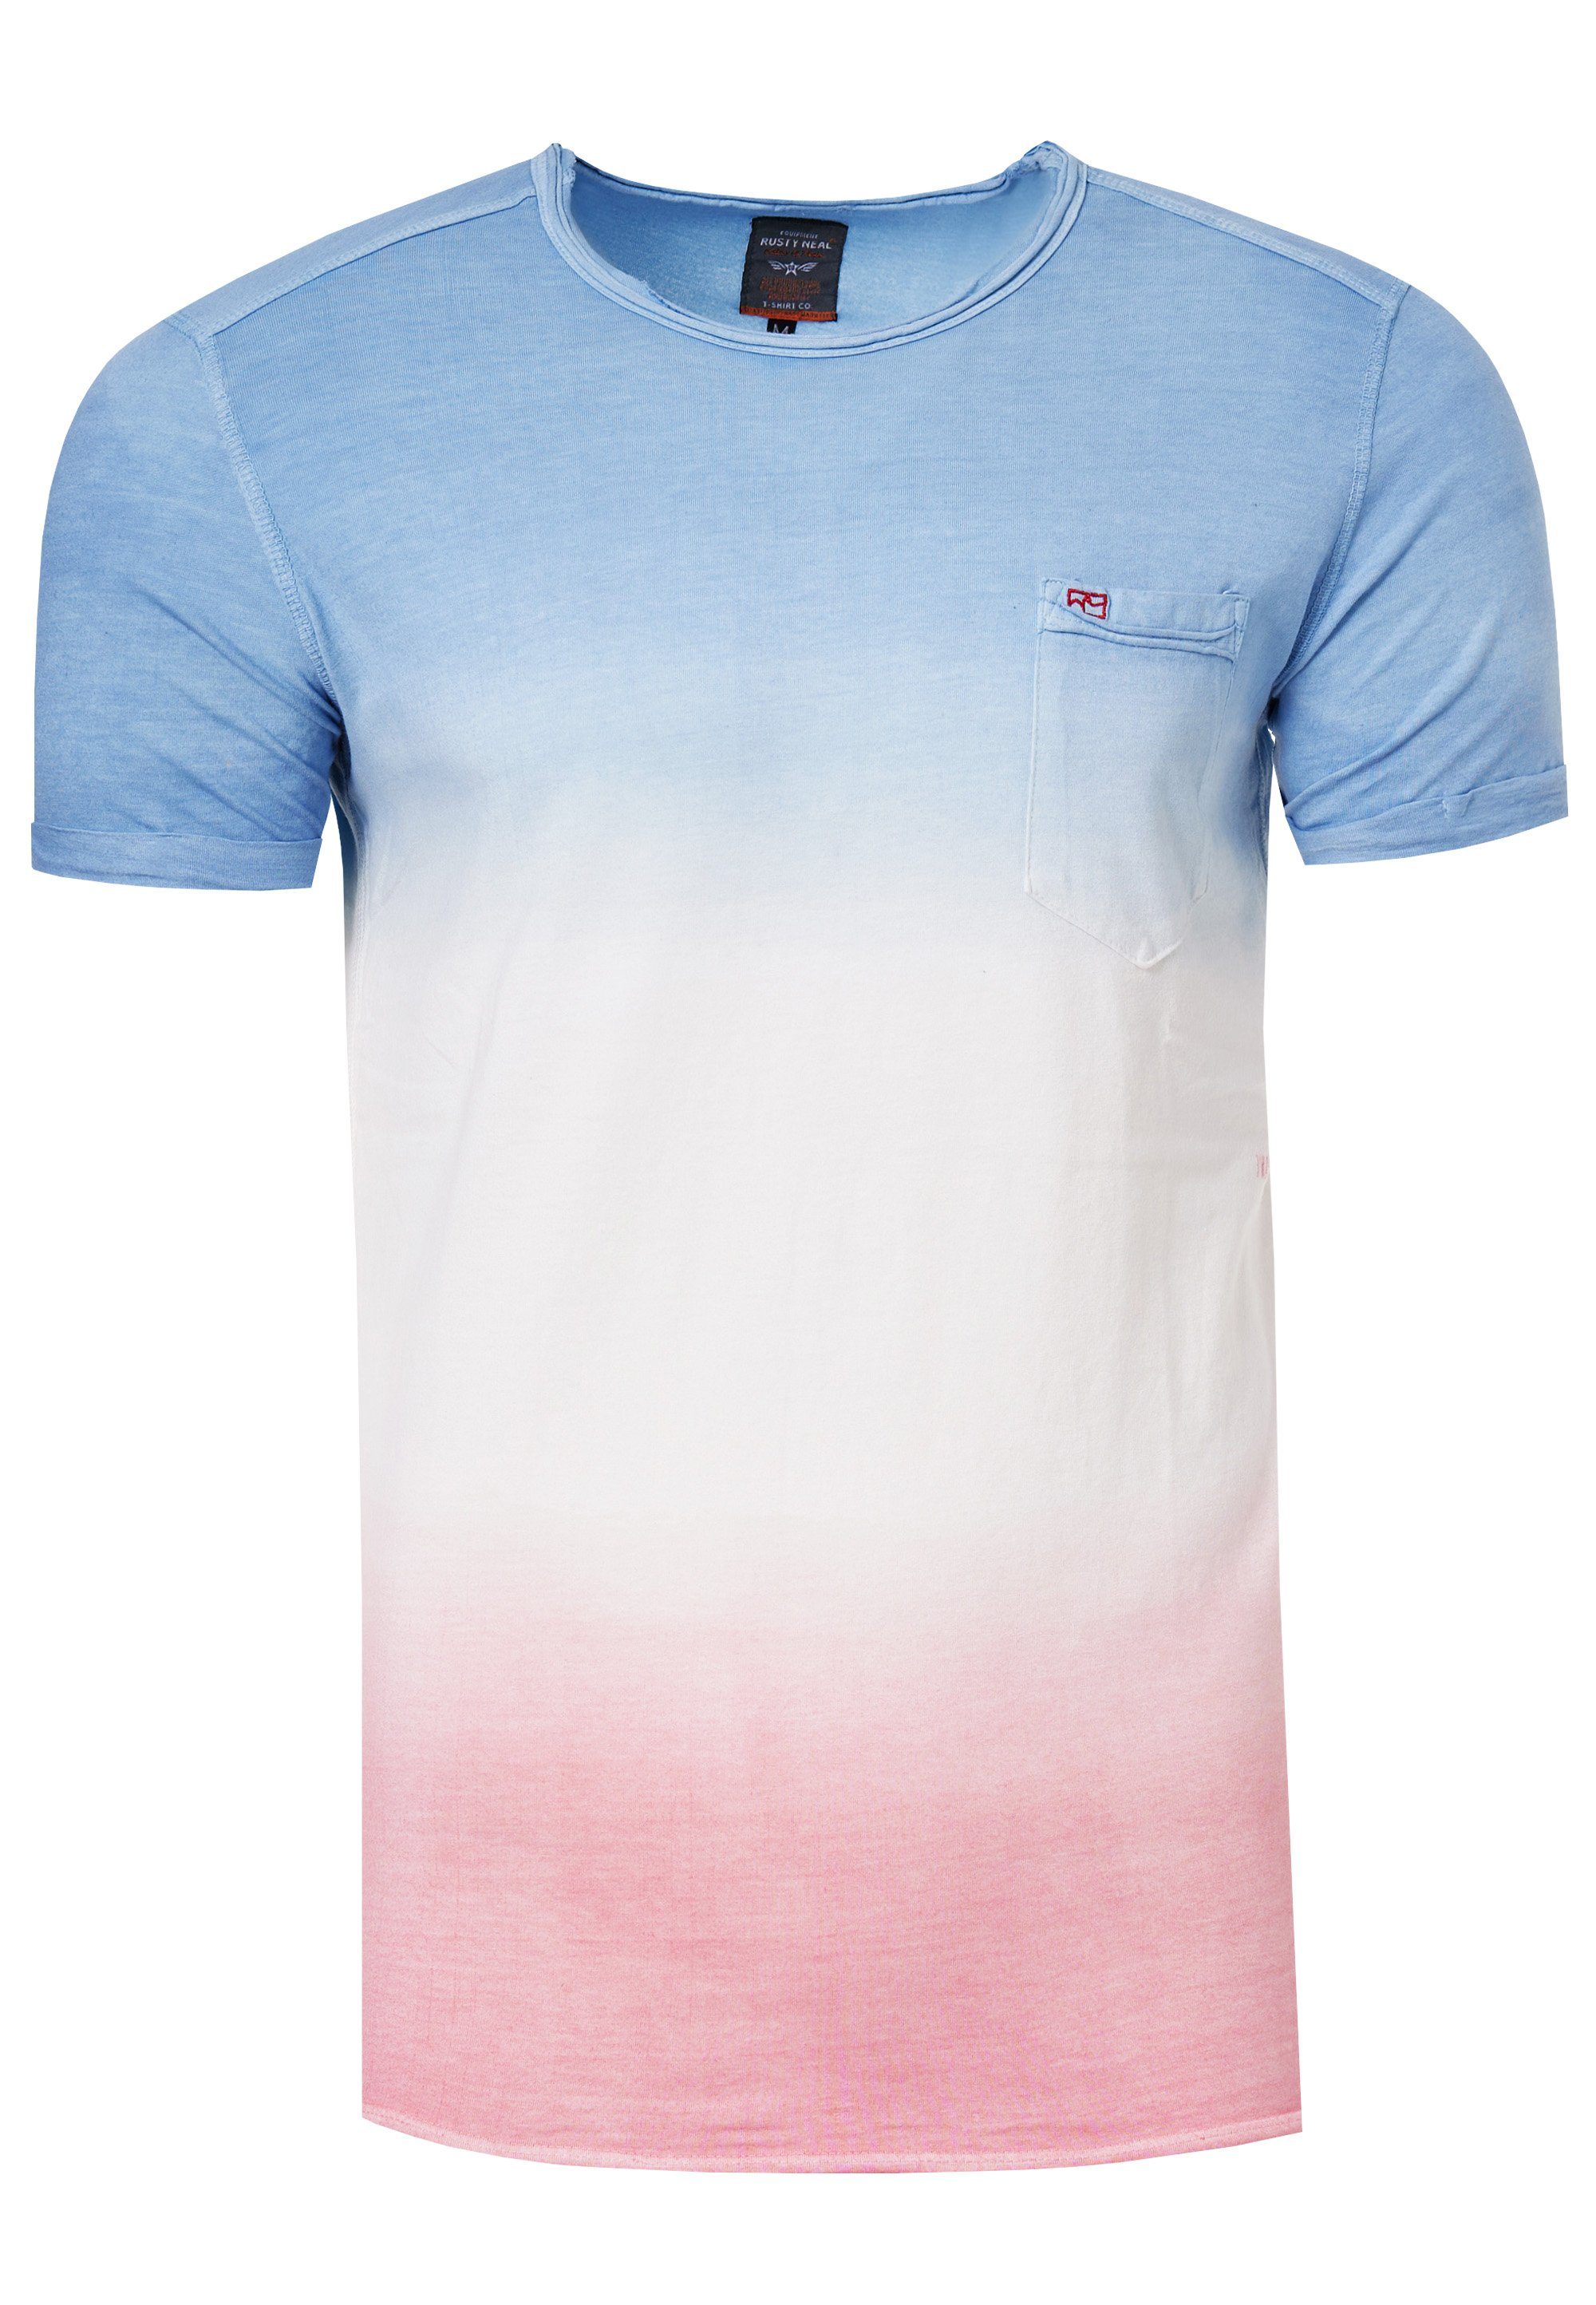 blau-rosa Rusty Used-Optik T-Shirt toller Neal in